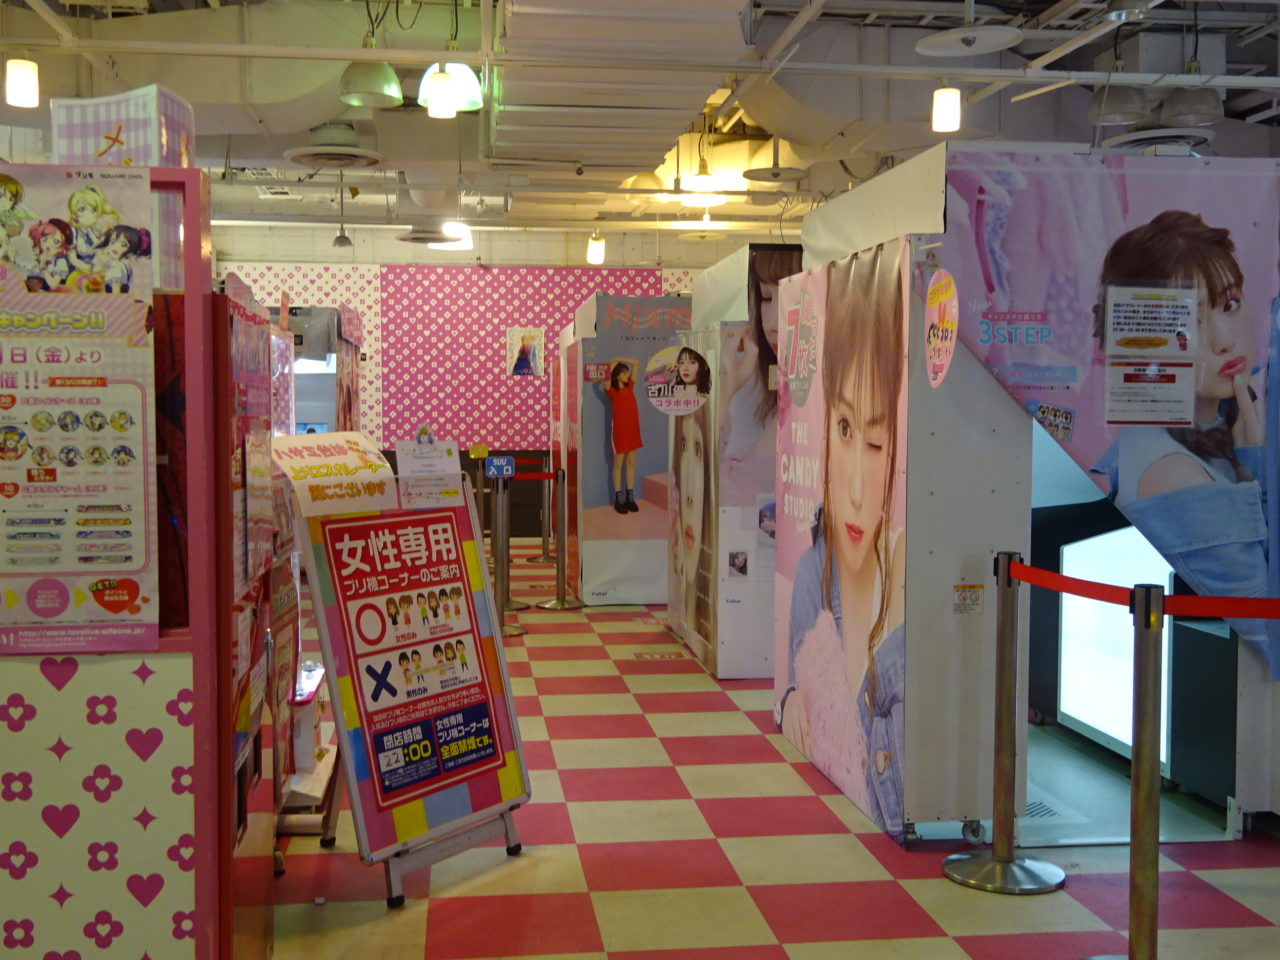 メイクルームやコスプレ衣装も借りれる 名古屋駅周辺でプリクラが撮れる場所一覧 おいでよ名古屋の食べ歩きログ